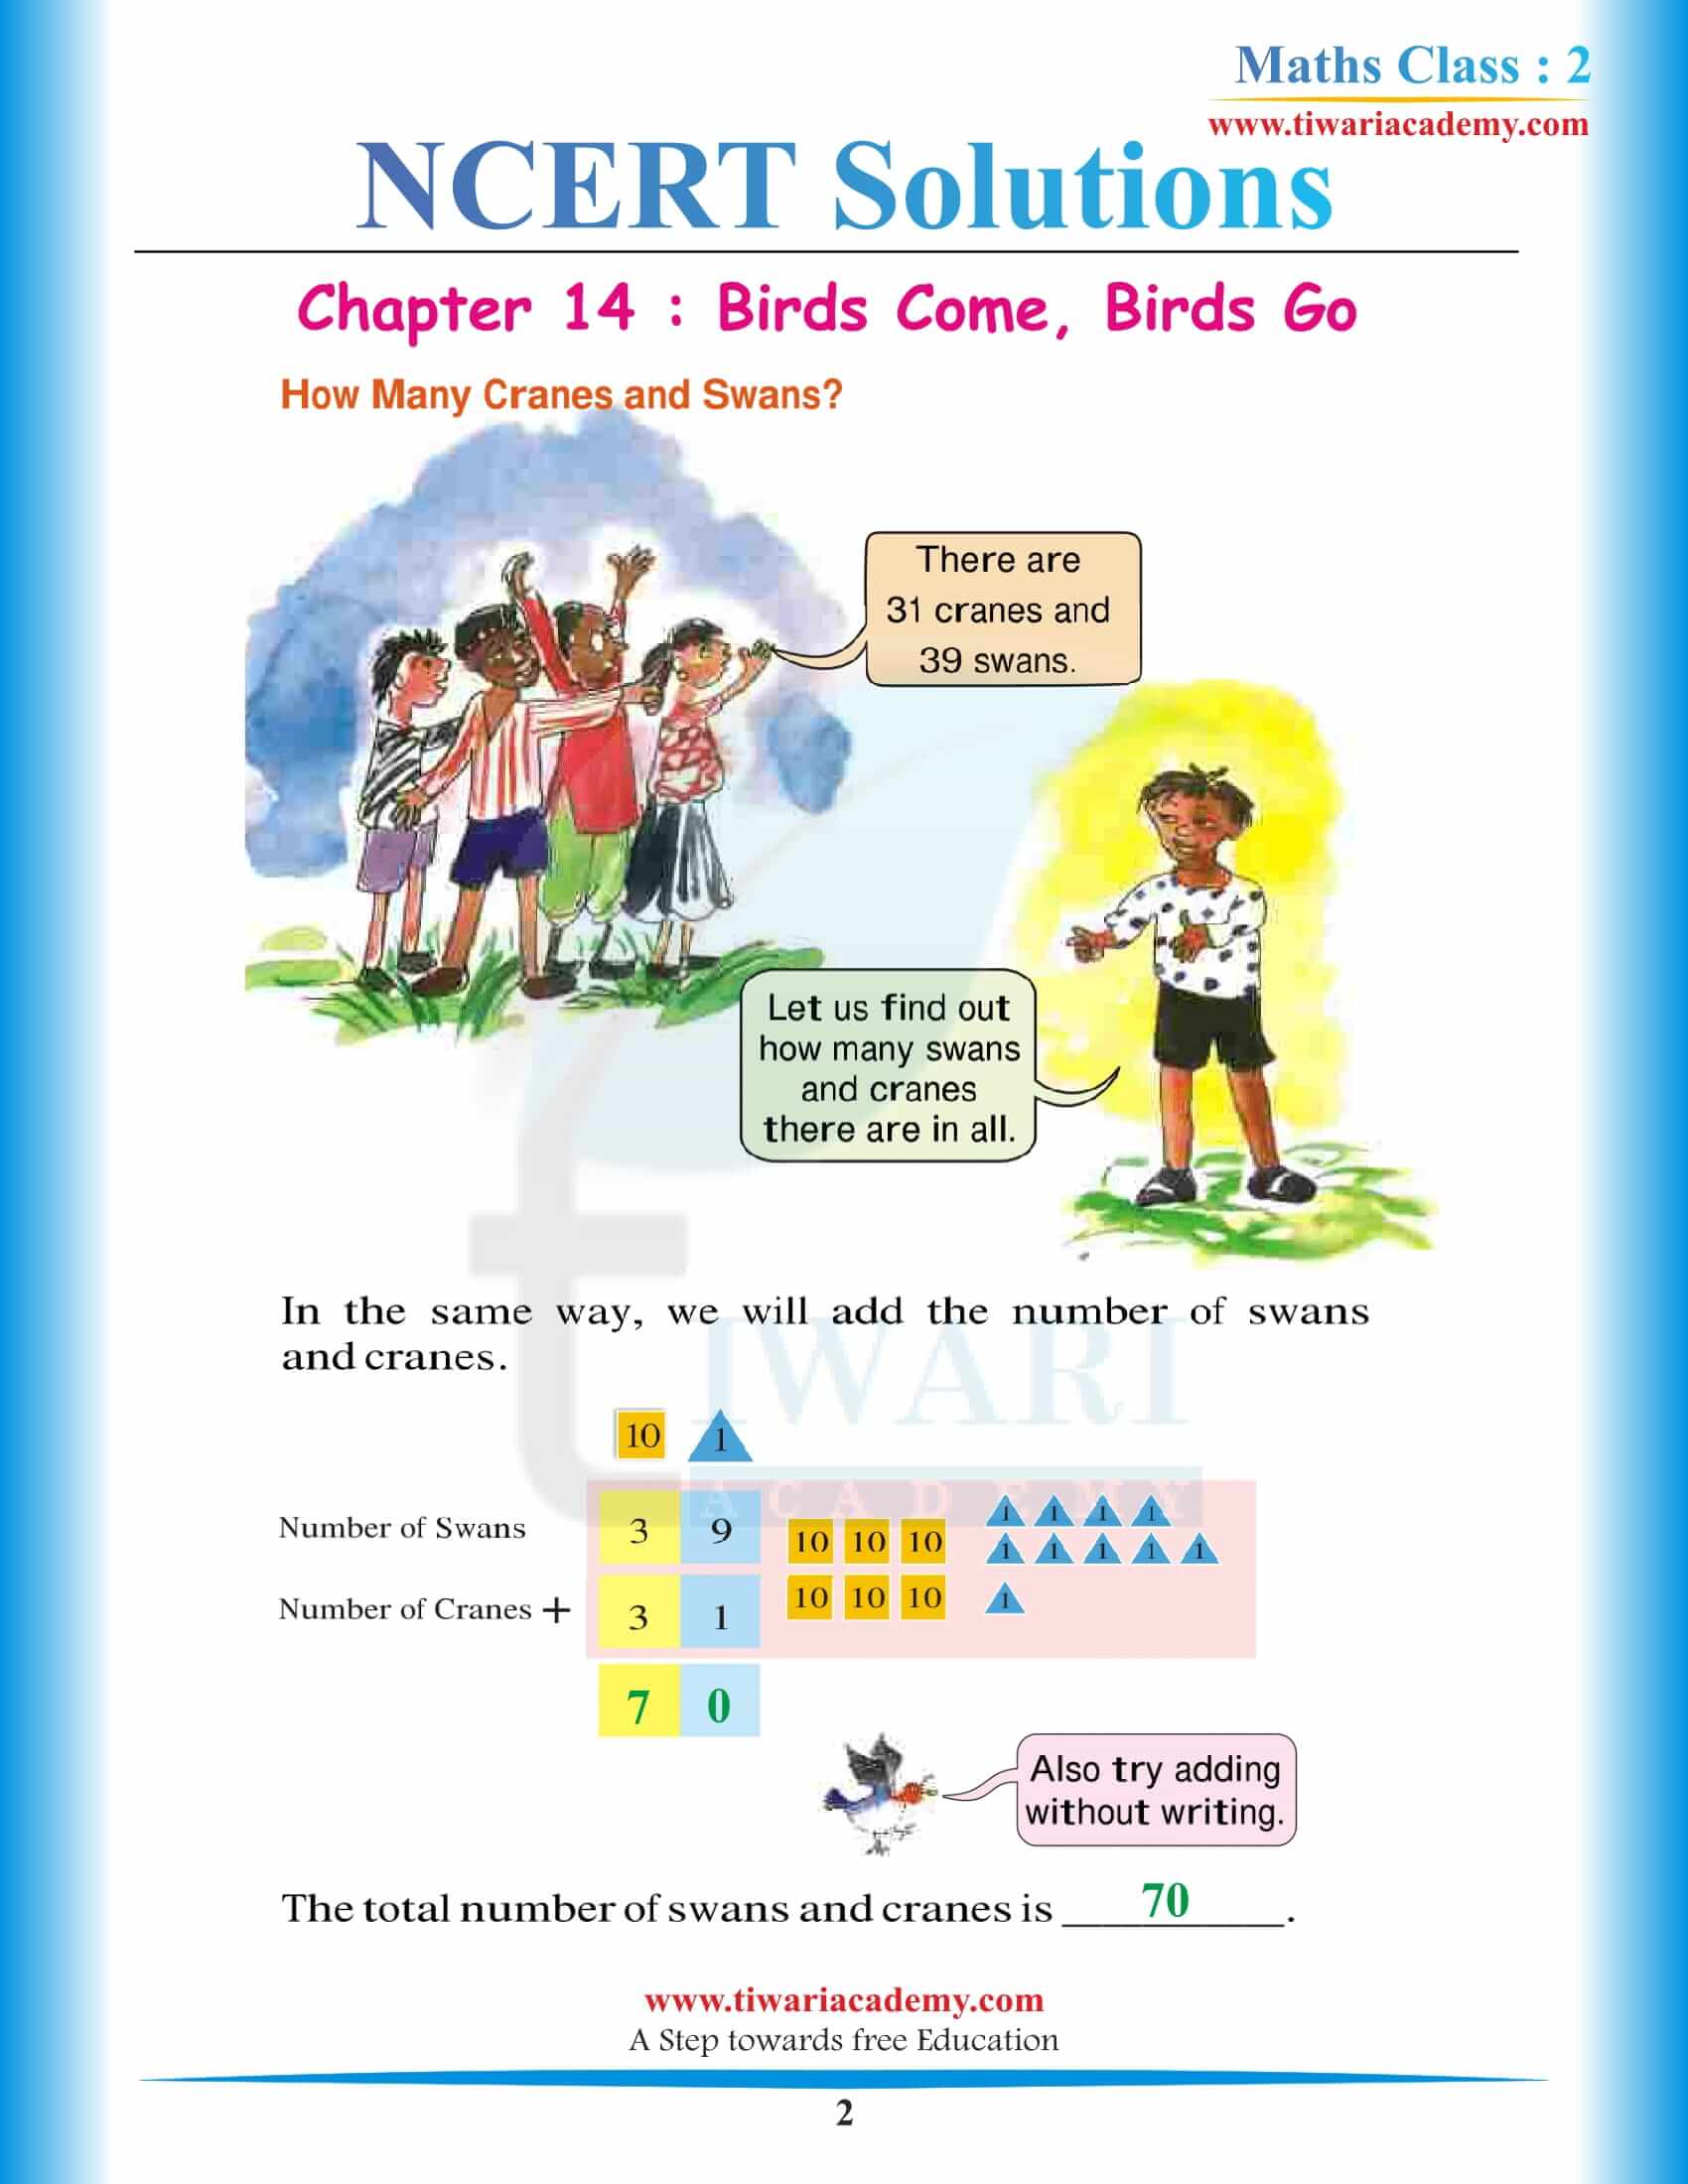 NCERT Solutions for Class 2 Maths Chapter 14